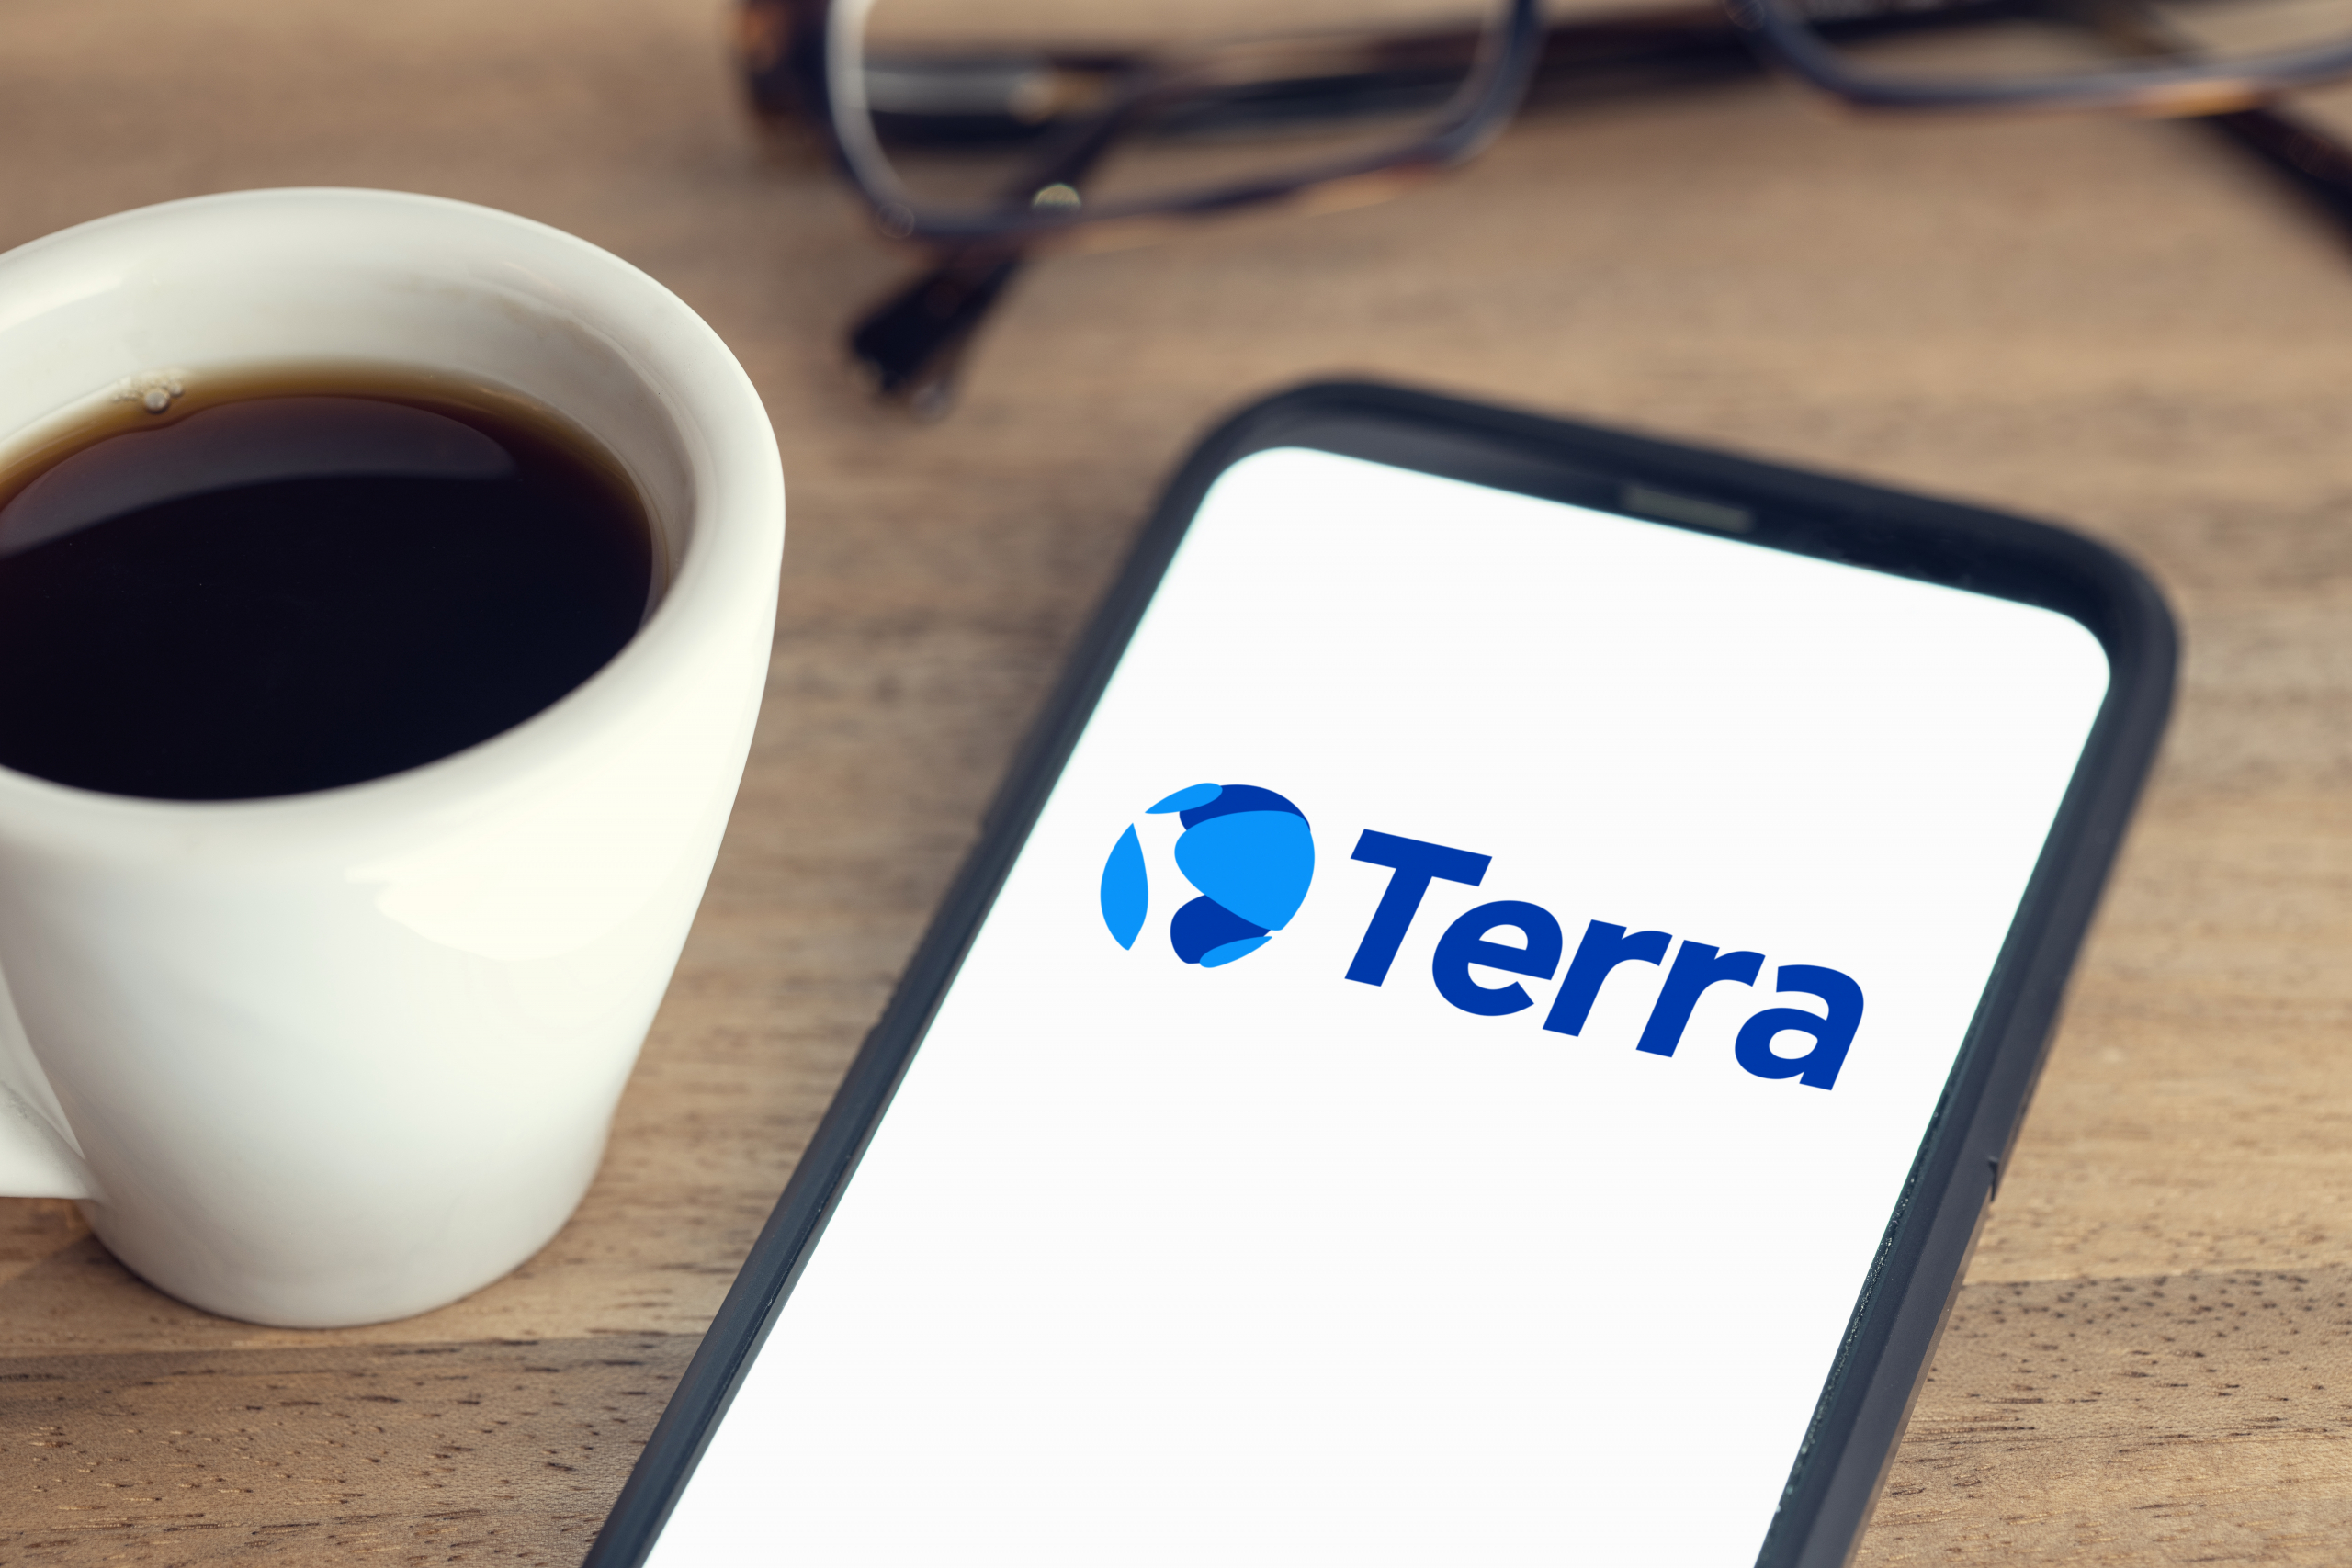 Terra's legal team resigns
